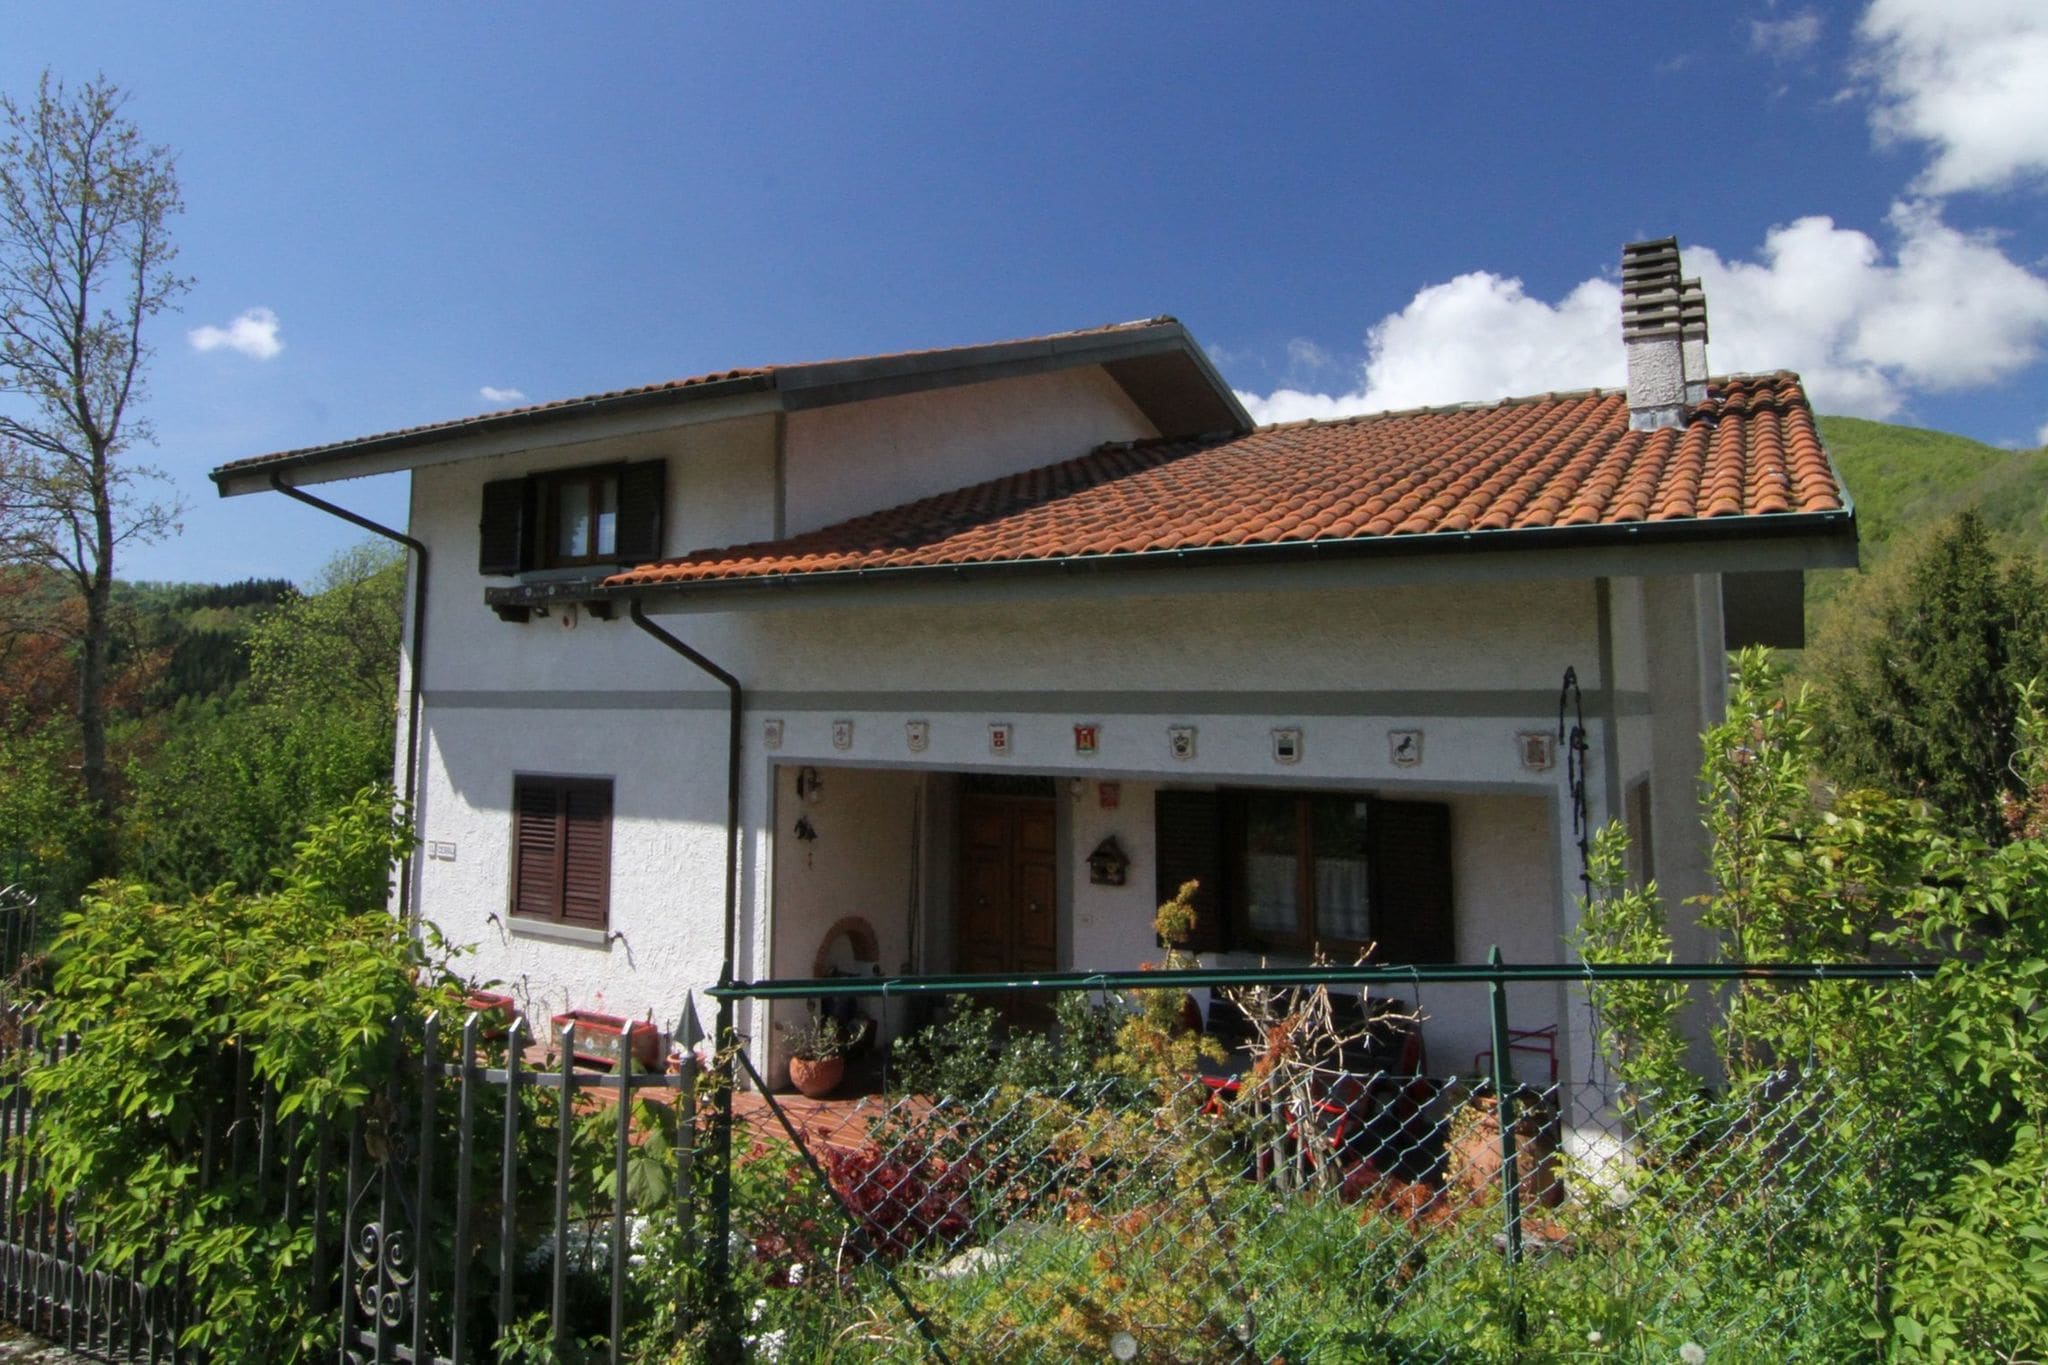 Maison de vacances avec jardin privé située en Toscane